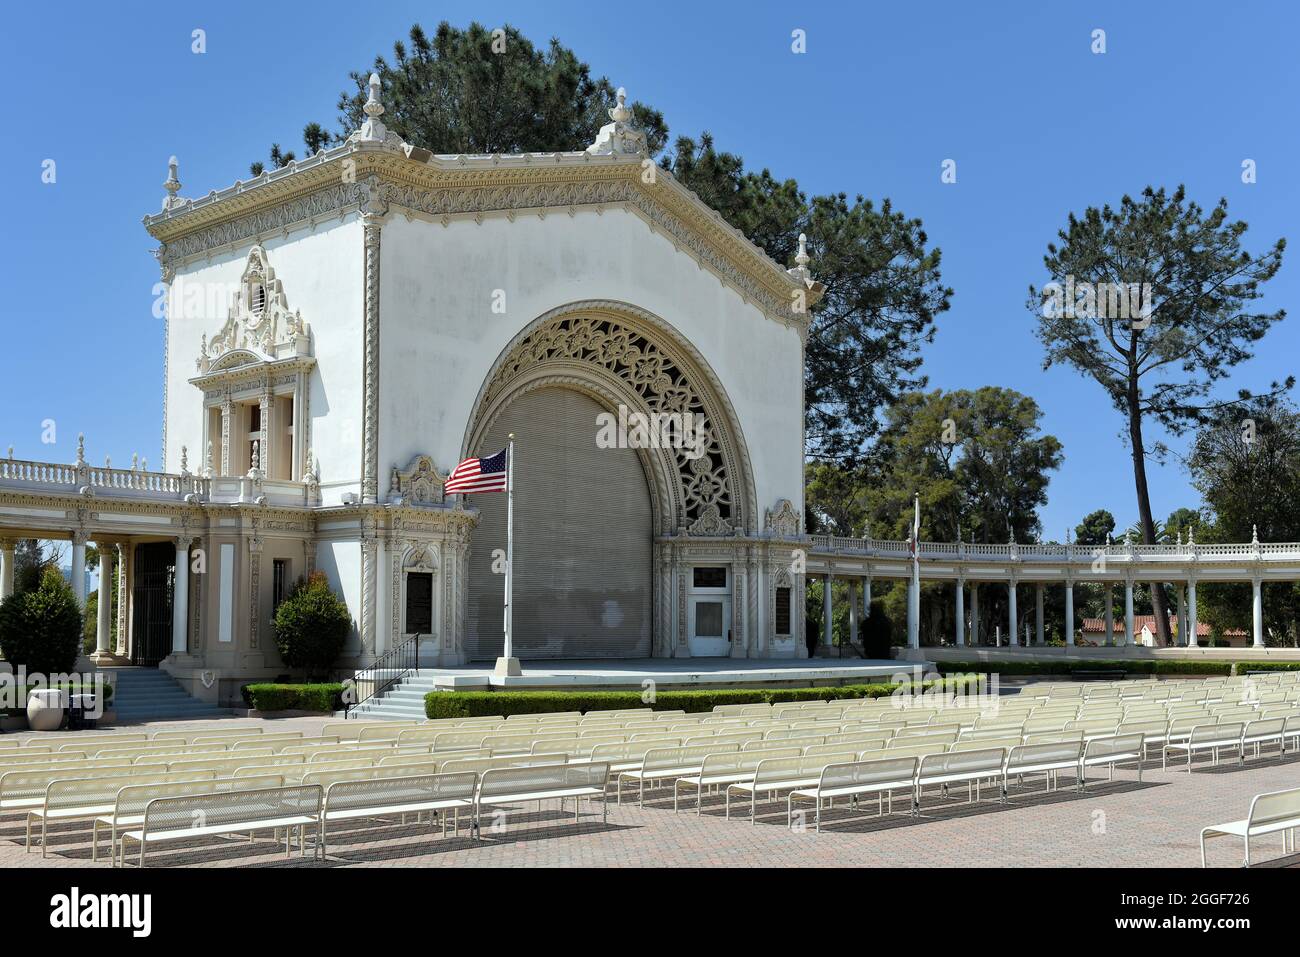 SAN DIEGO, CALIFORNIA - 25 AGO 2021: Il Padiglione degli organi di Spreckels a Balboa Park, ospita il più grande organo all'aperto del mondo. Foto Stock